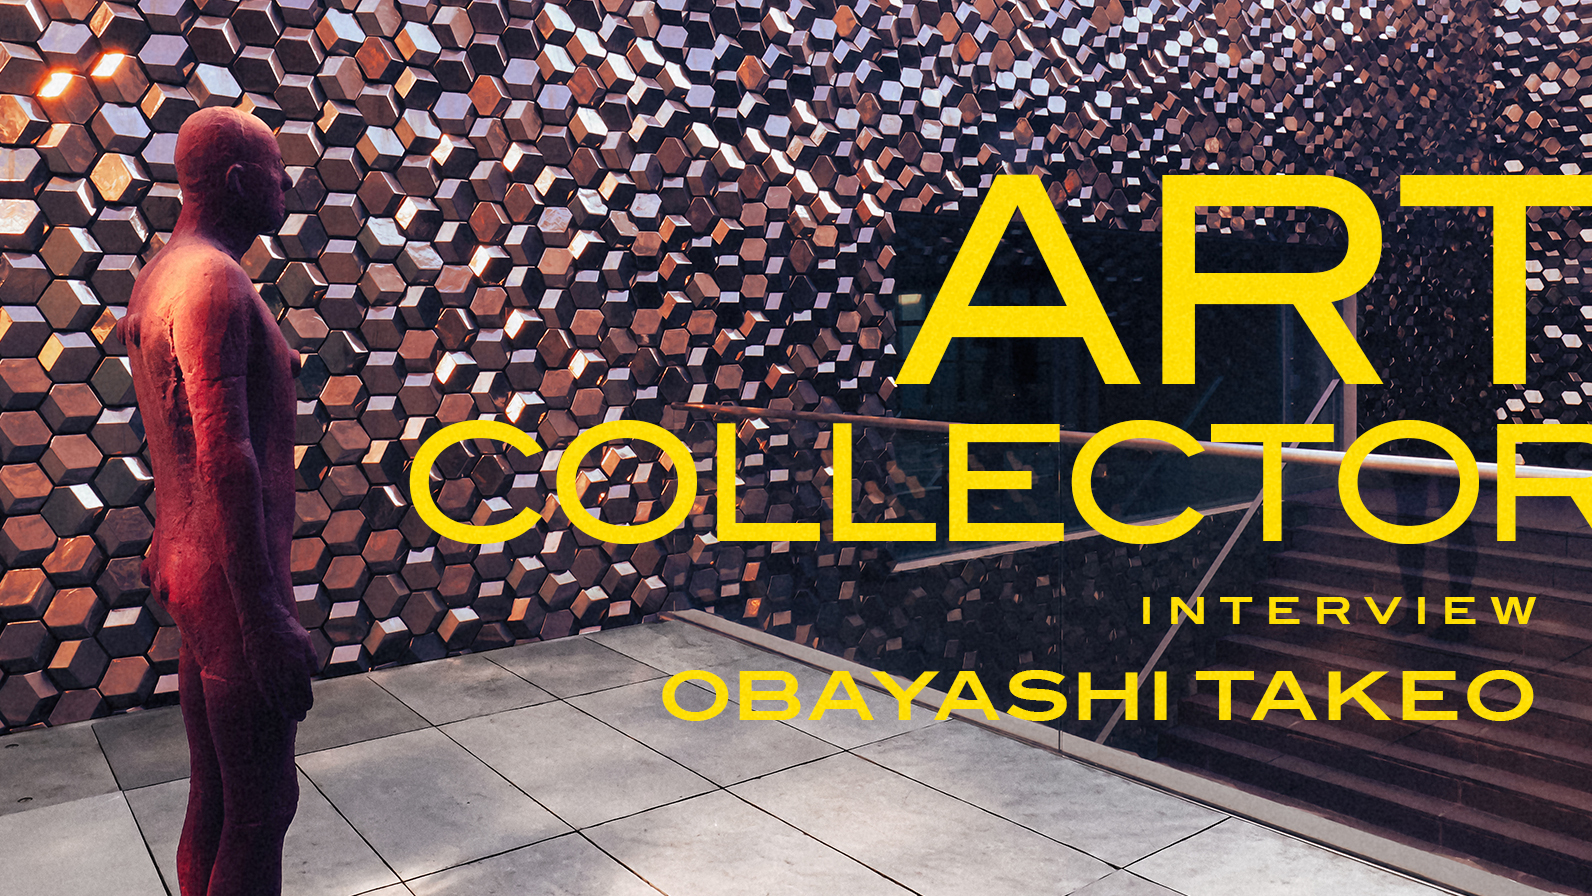 yu-un obayashi collection 非売品 アート art-